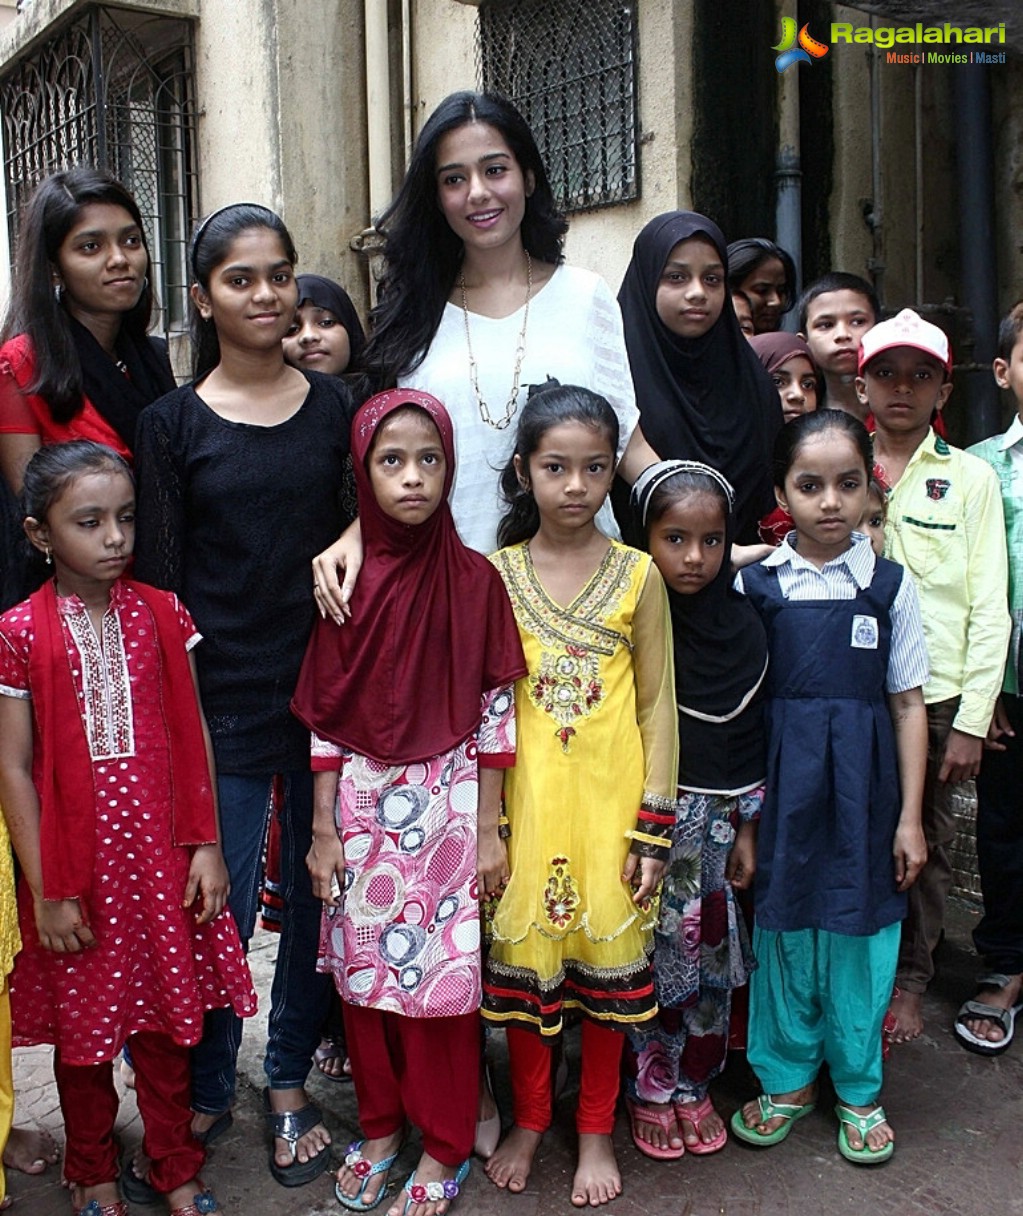 Amrita Rao visits Pratham NGO in Andheri, Mumbai